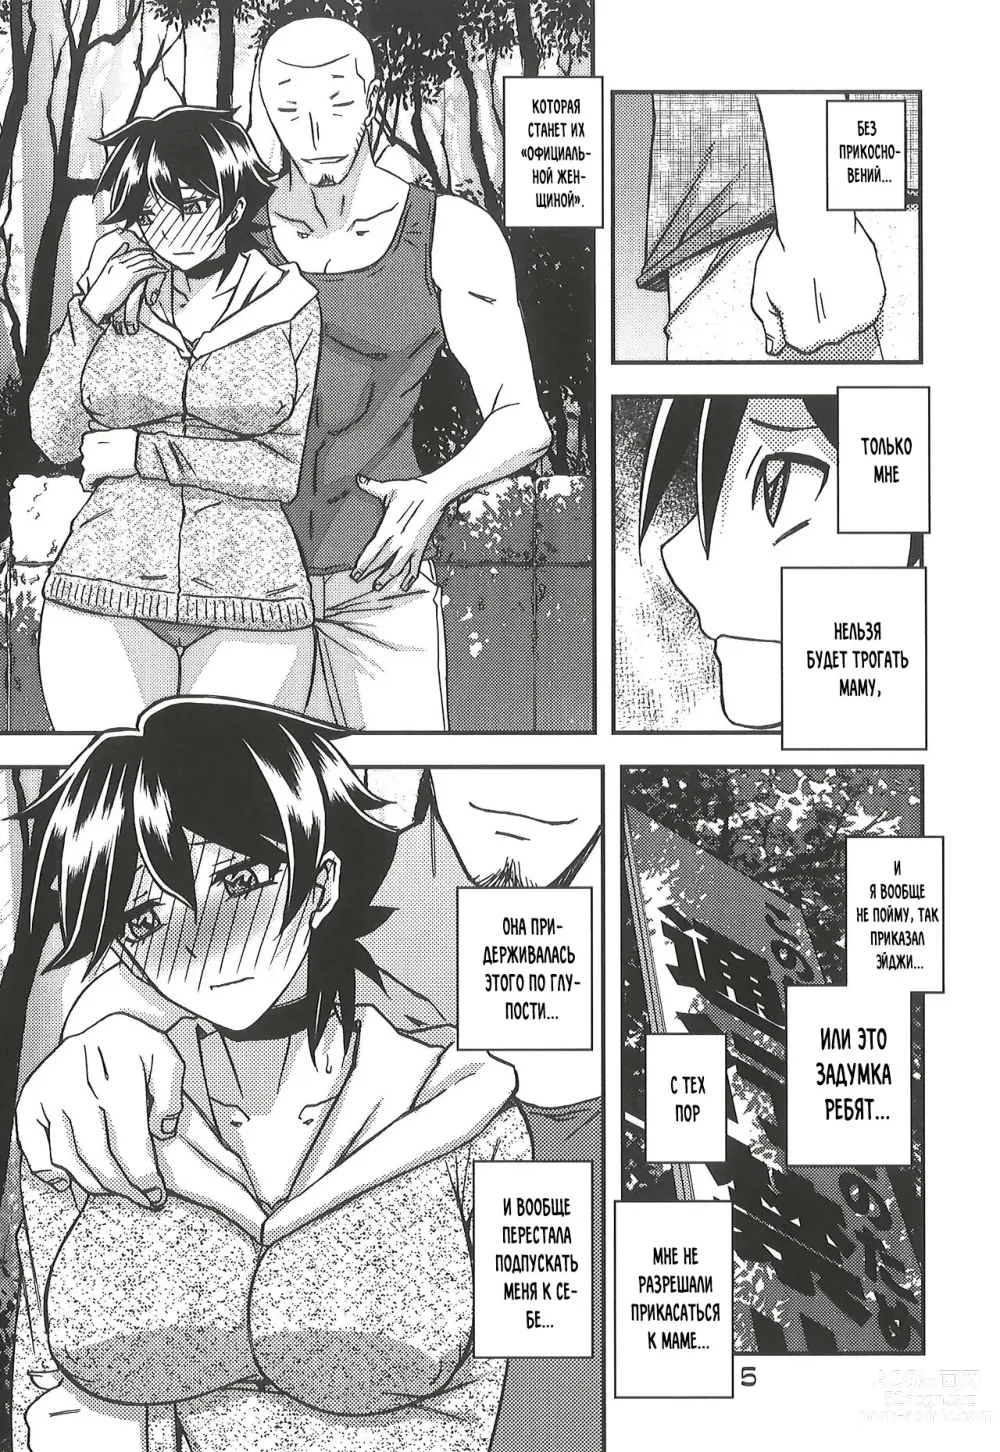 Page 6 of doujinshi Akebi no Mi - Yuuko CONTINUATION